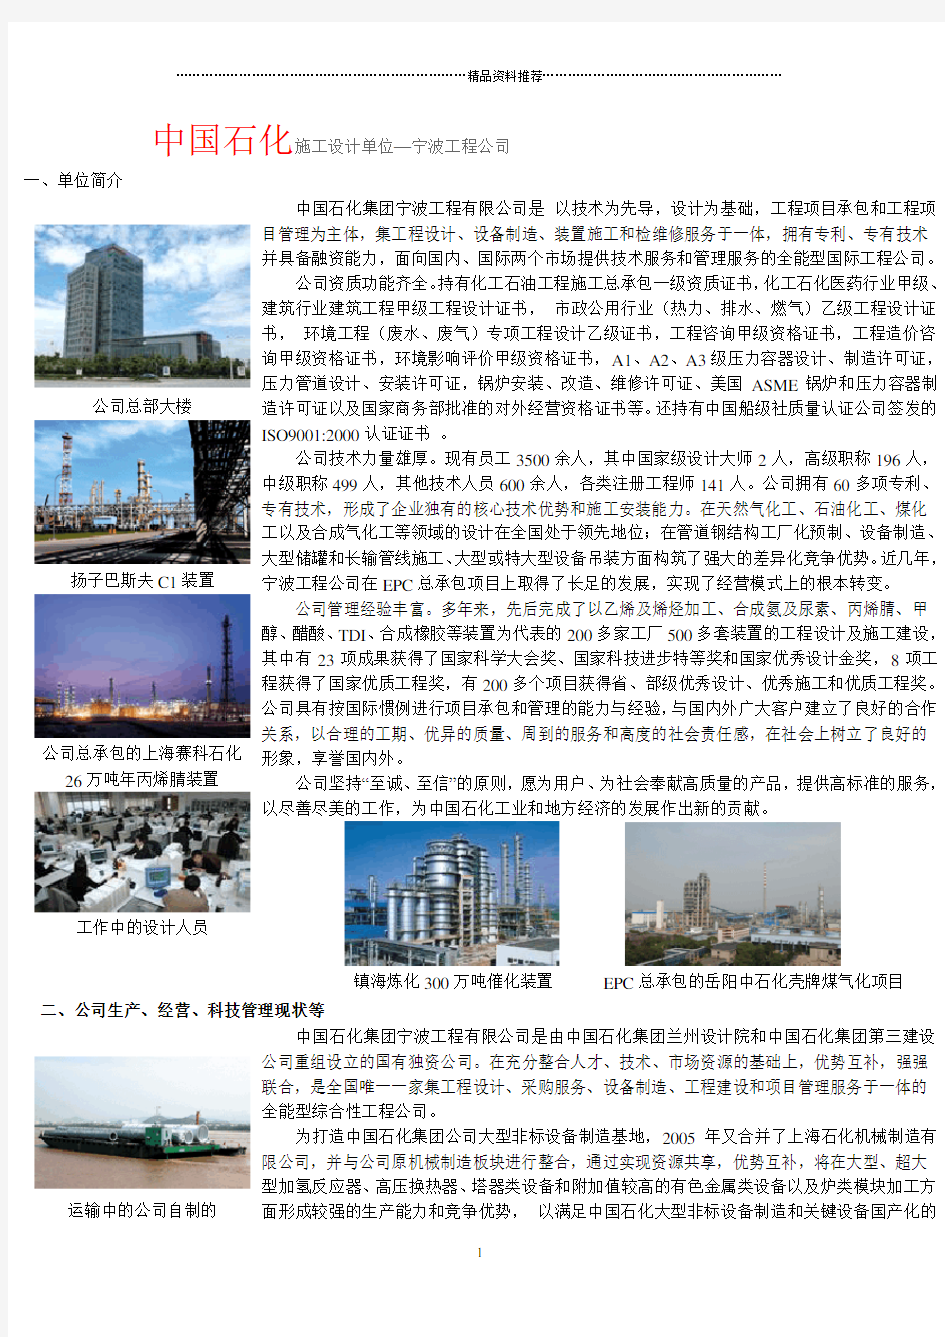 中国石化施工设计单位—宁波工程公司一、单位简介公司总部大